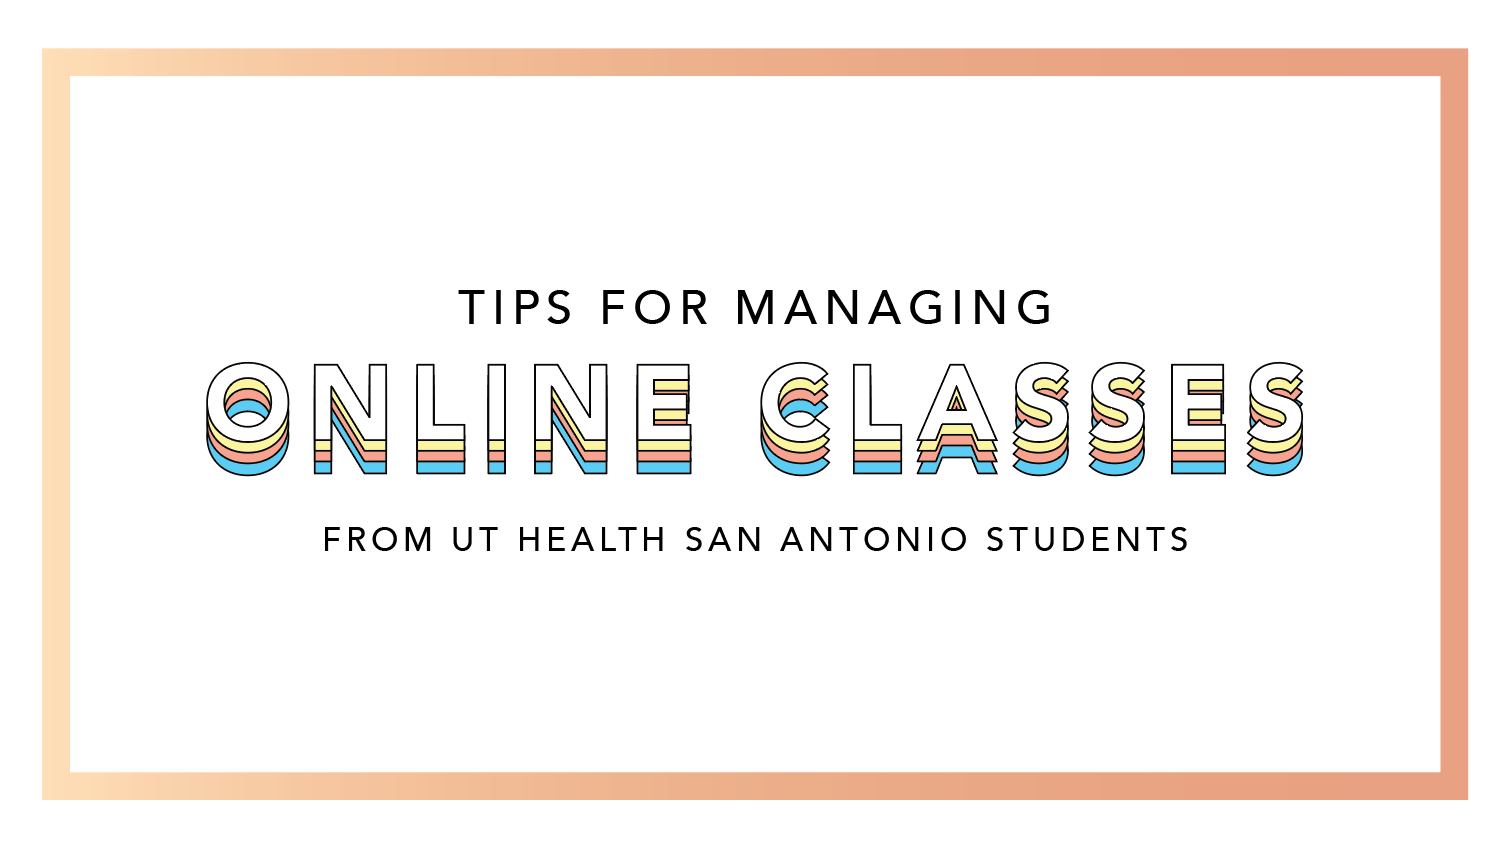 Online class tips